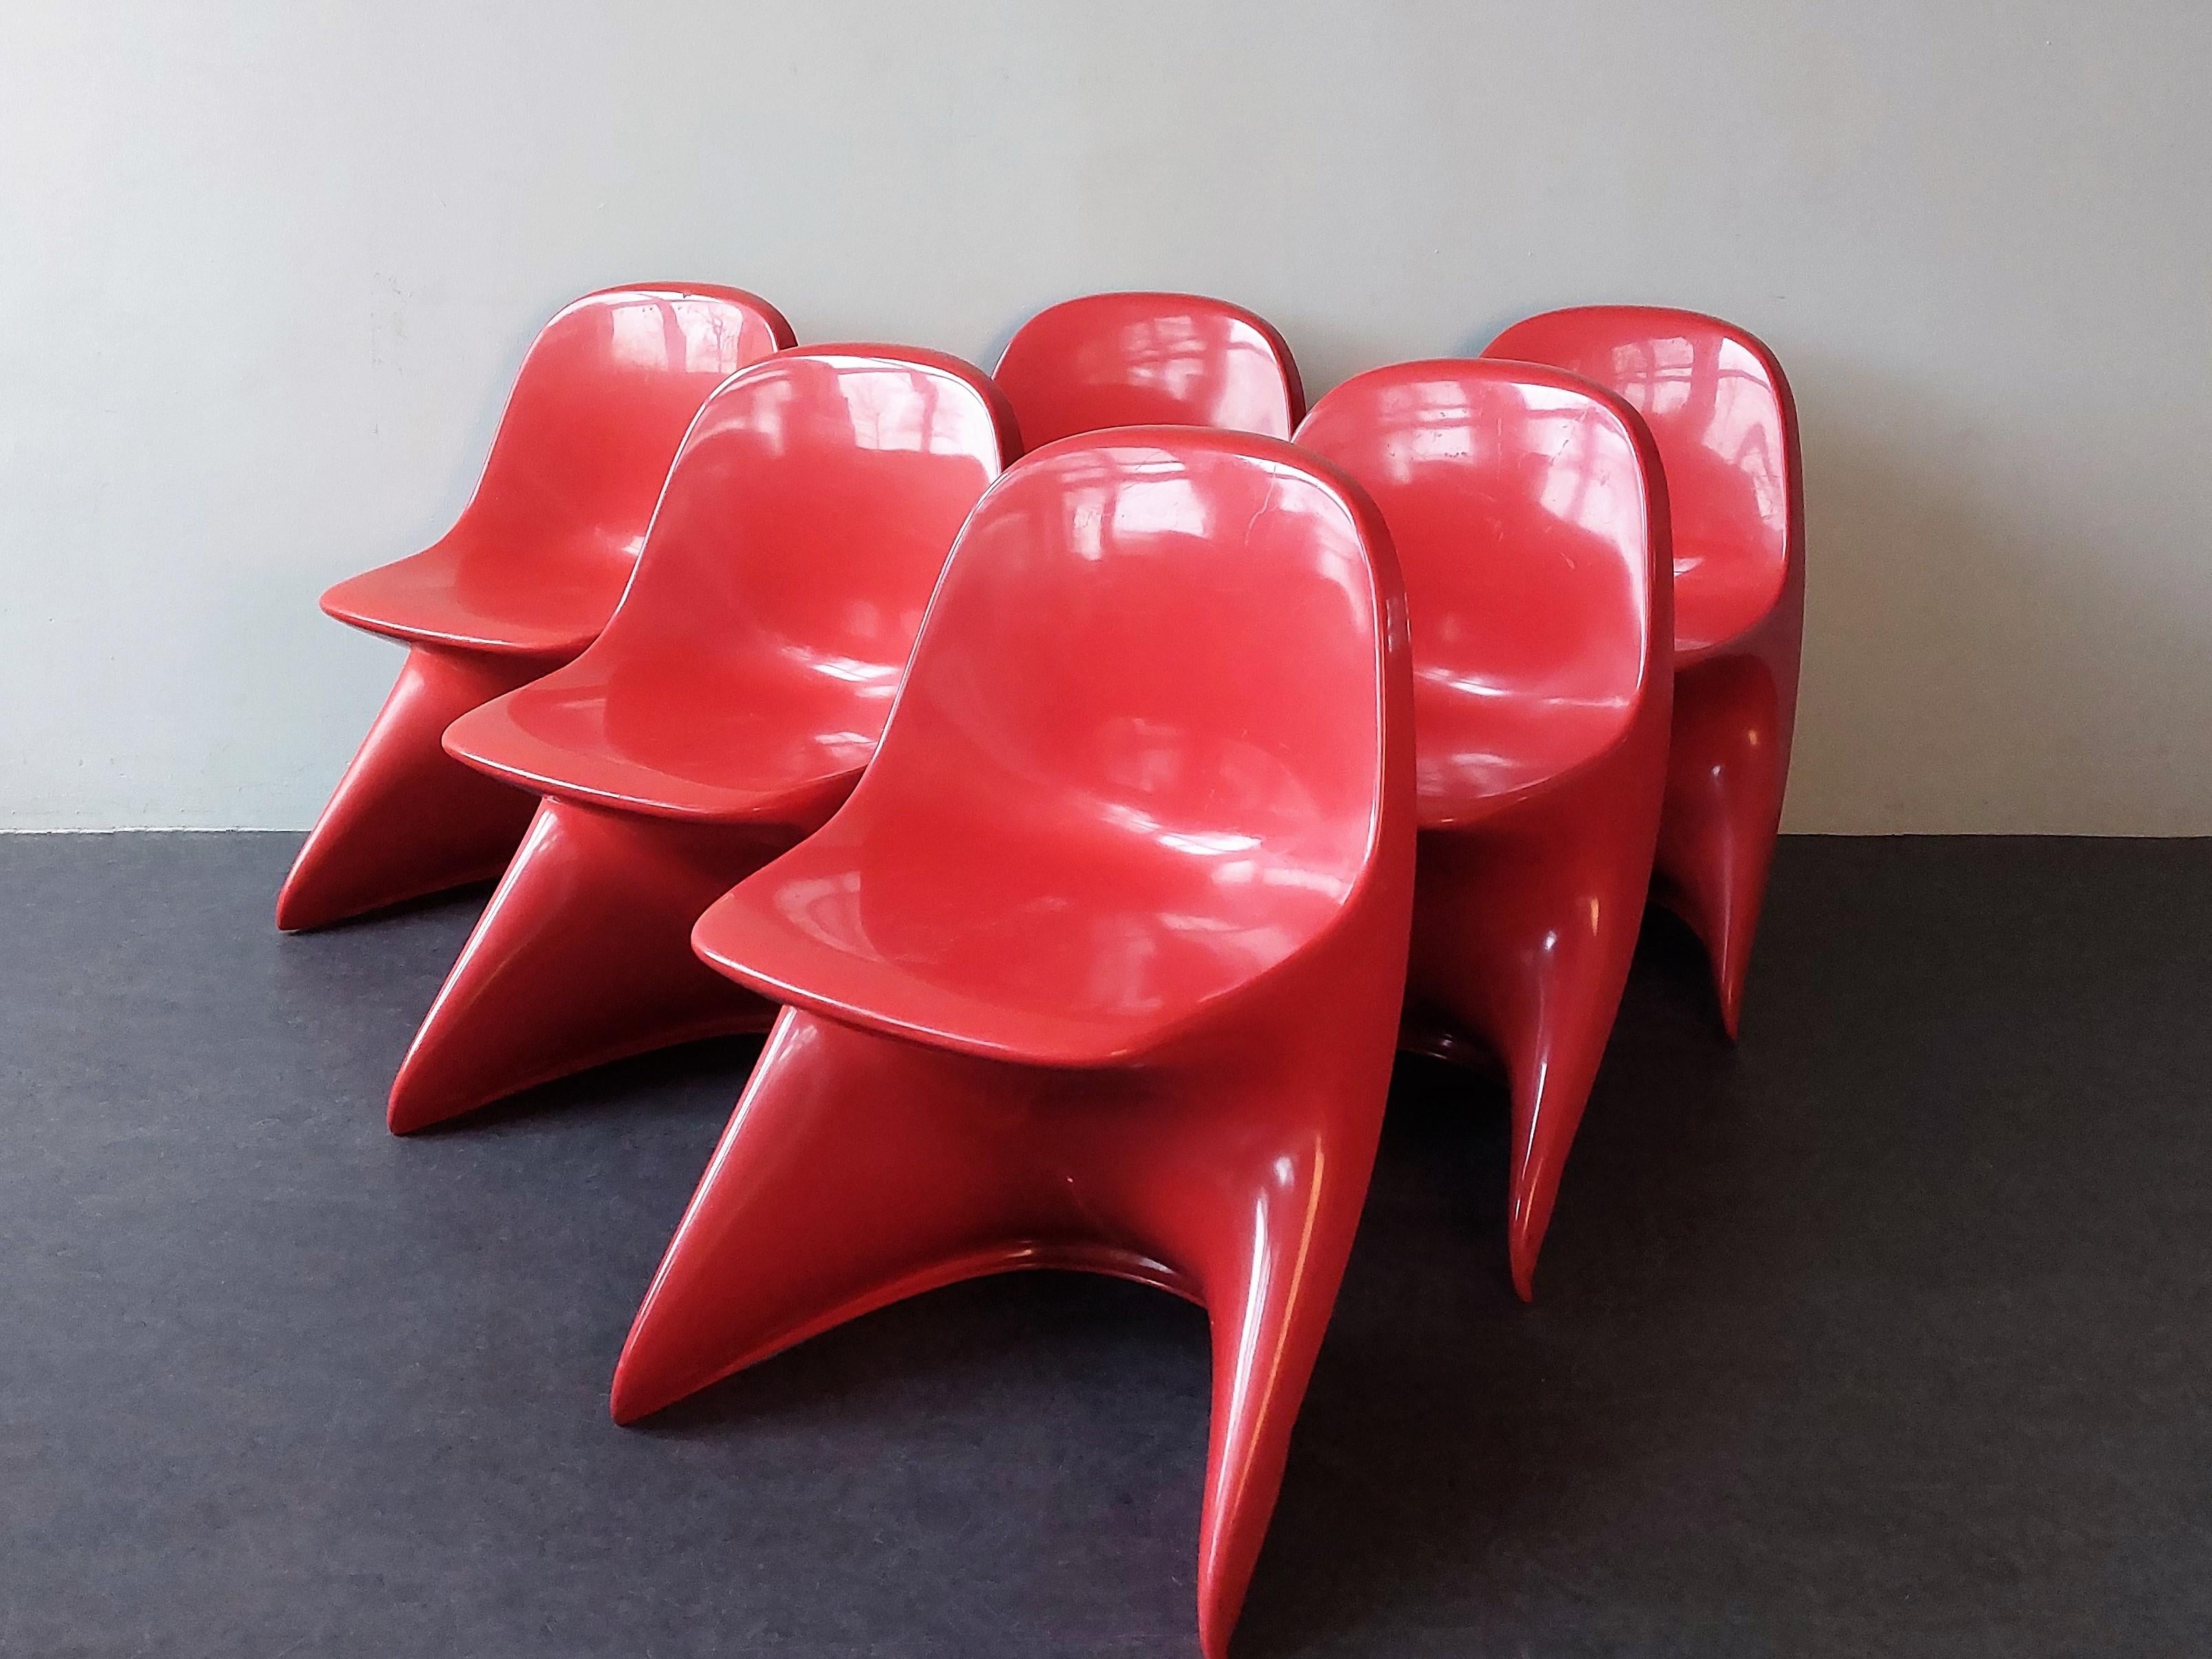 Cette chaise pour enfants iconique, modèle Casalino1, a été conçue par Alexander Begge pour Casala en Italie dans les années 1970. Il est toujours aussi populaire 50 ans plus tard en raison de sa forme unique et intemporelle. La chaise est empilable